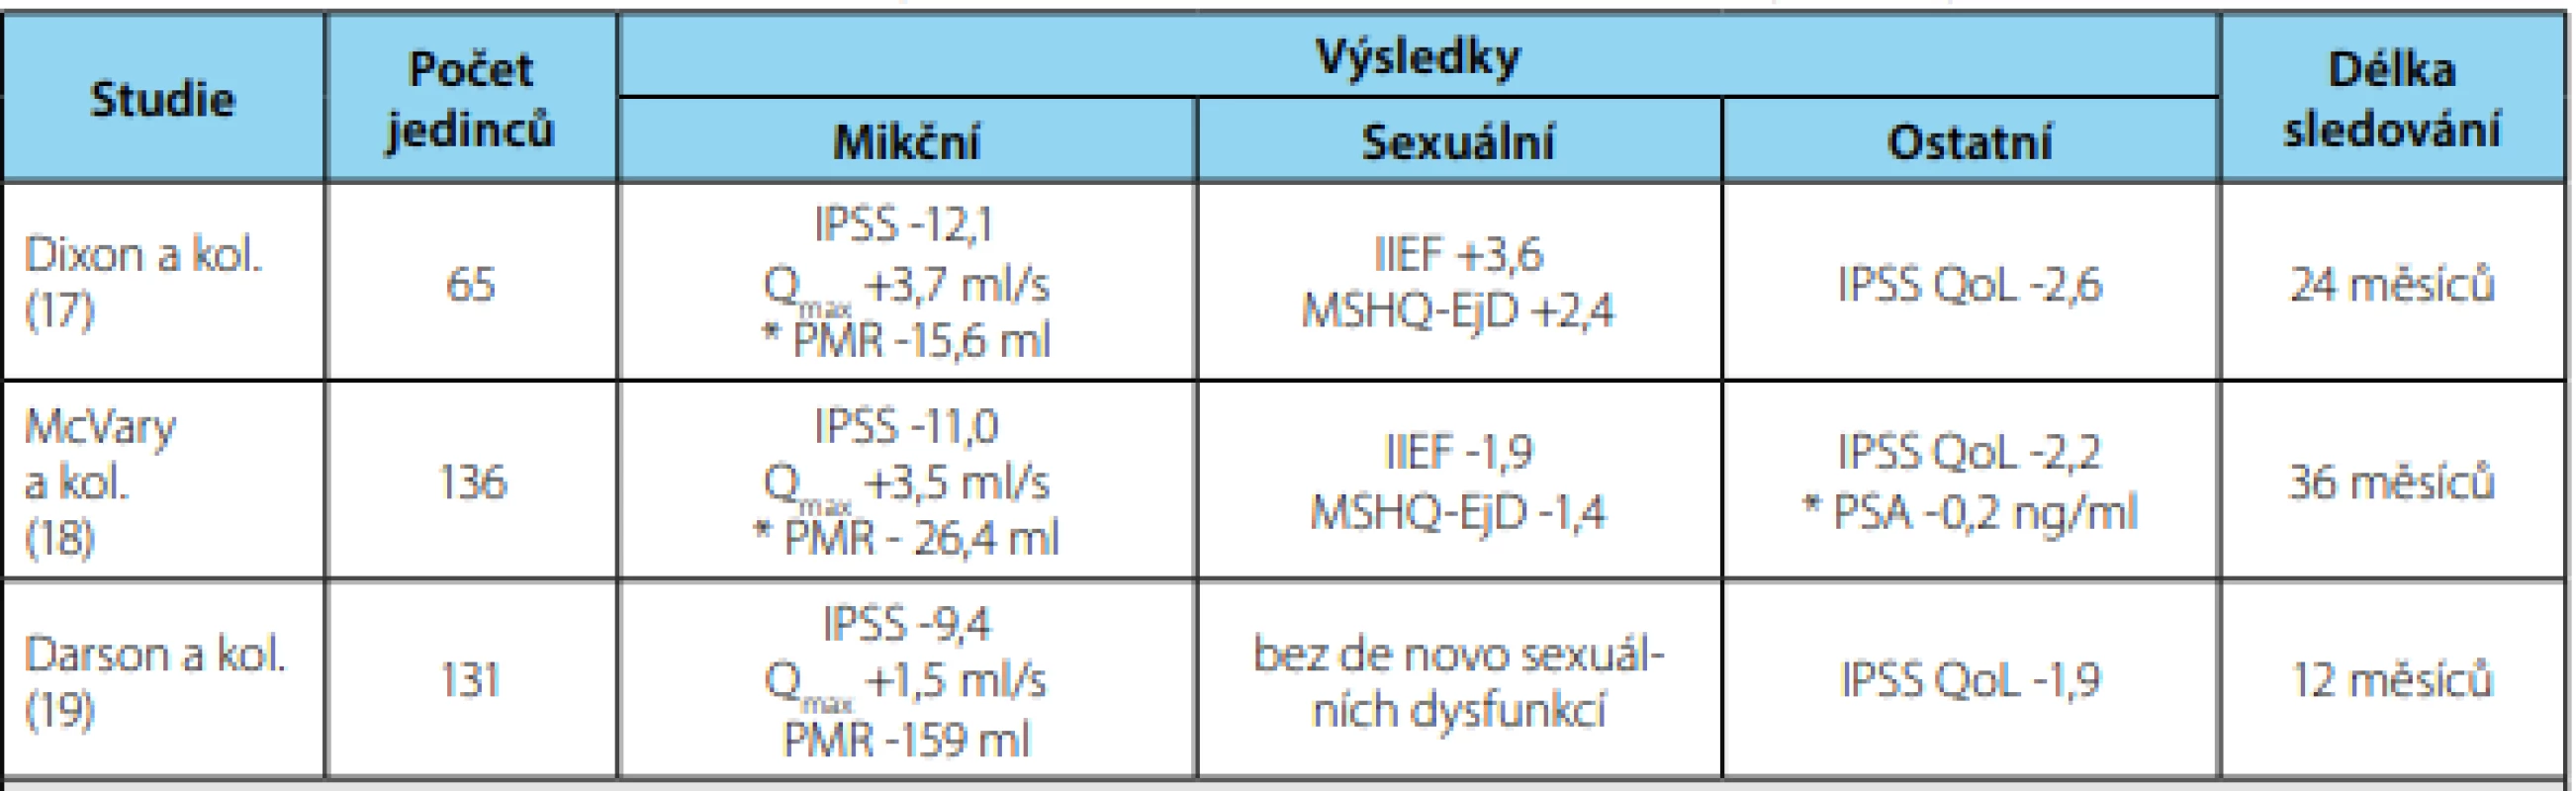 Klinické výsledky systému Rezūm® v léčbě příznaků dolních močových cest u mužů s BHP<br>
Tab. 6. Clinical results of the Rezūm® system in the treatment of lower urinary tract symptoms in men with BPH